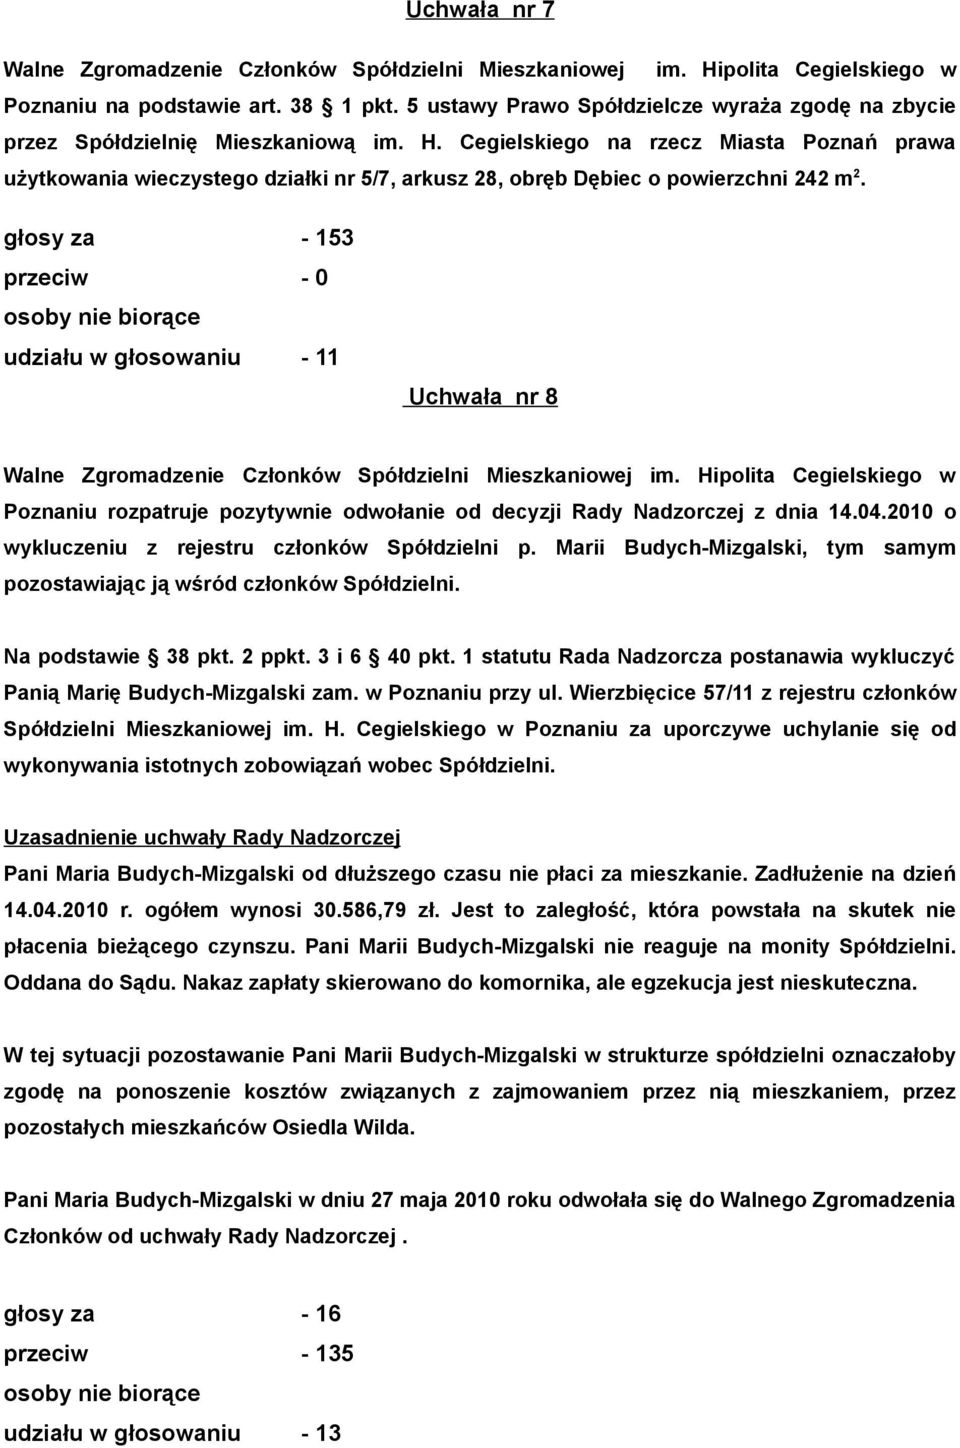 głosy za - 153 przeciw - 0 udziału w głosowaniu - 11 Uchwała nr 8 Poznaniu rozpatruje pozytywnie odwołanie od decyzji Rady Nadzorczej z dnia 14.04.2010 o wykluczeniu z rejestru członków Spółdzielni p.